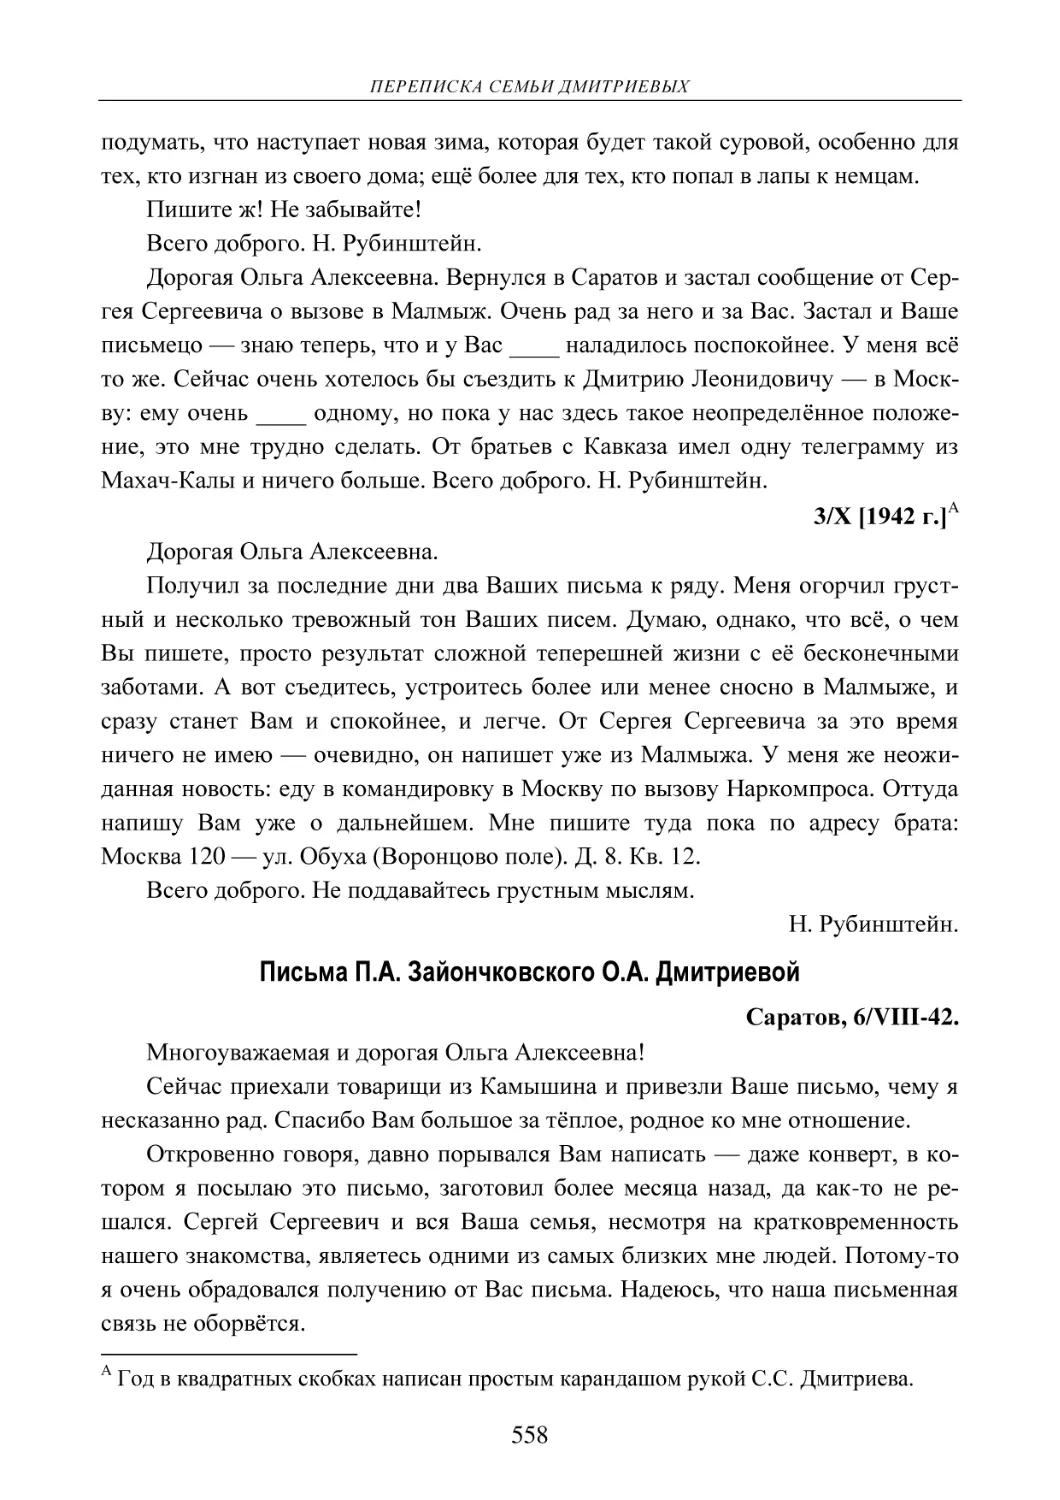 3/Х [1942 г.]
Письма П.А. Зайончковского О.А. Дмитриевой
Саратов, 6/VIII-42.